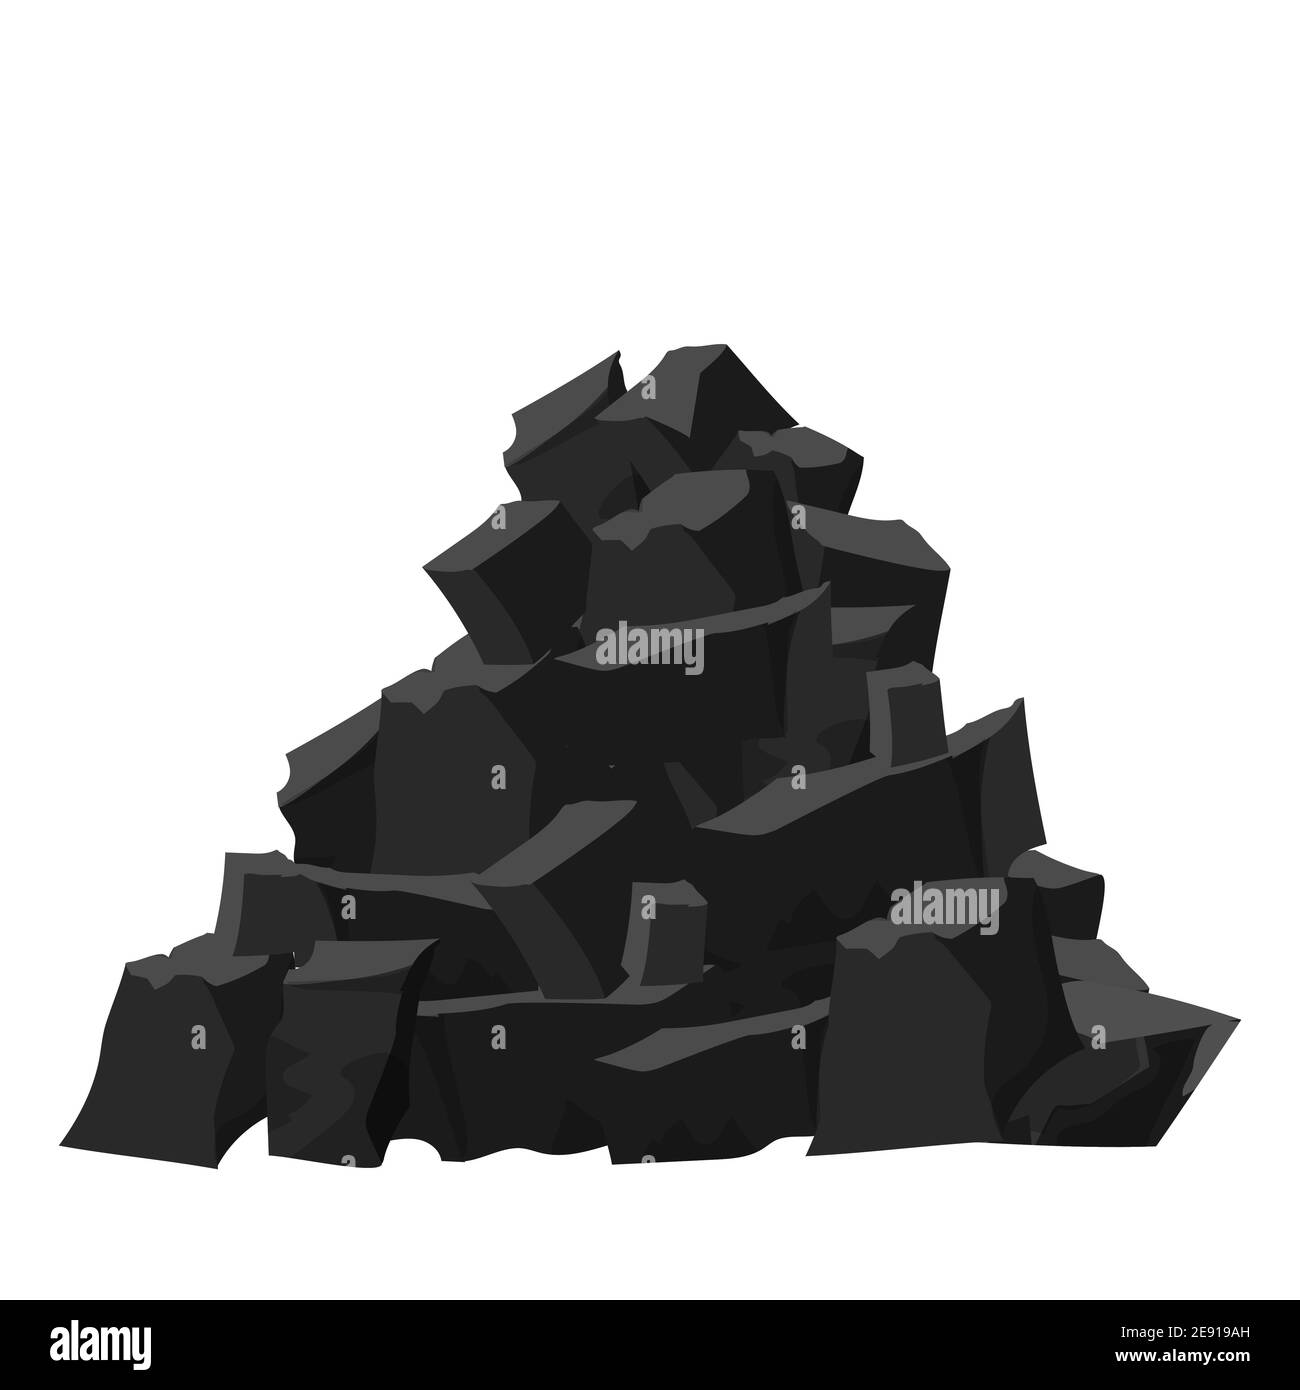 Gran montón, pila de de carbón, carbón en estilo de dibujos animados aislados sobre fondo blanco. Colores negro y gris oscuro, dibujo detallado. Industria pesada de stock - Alamy